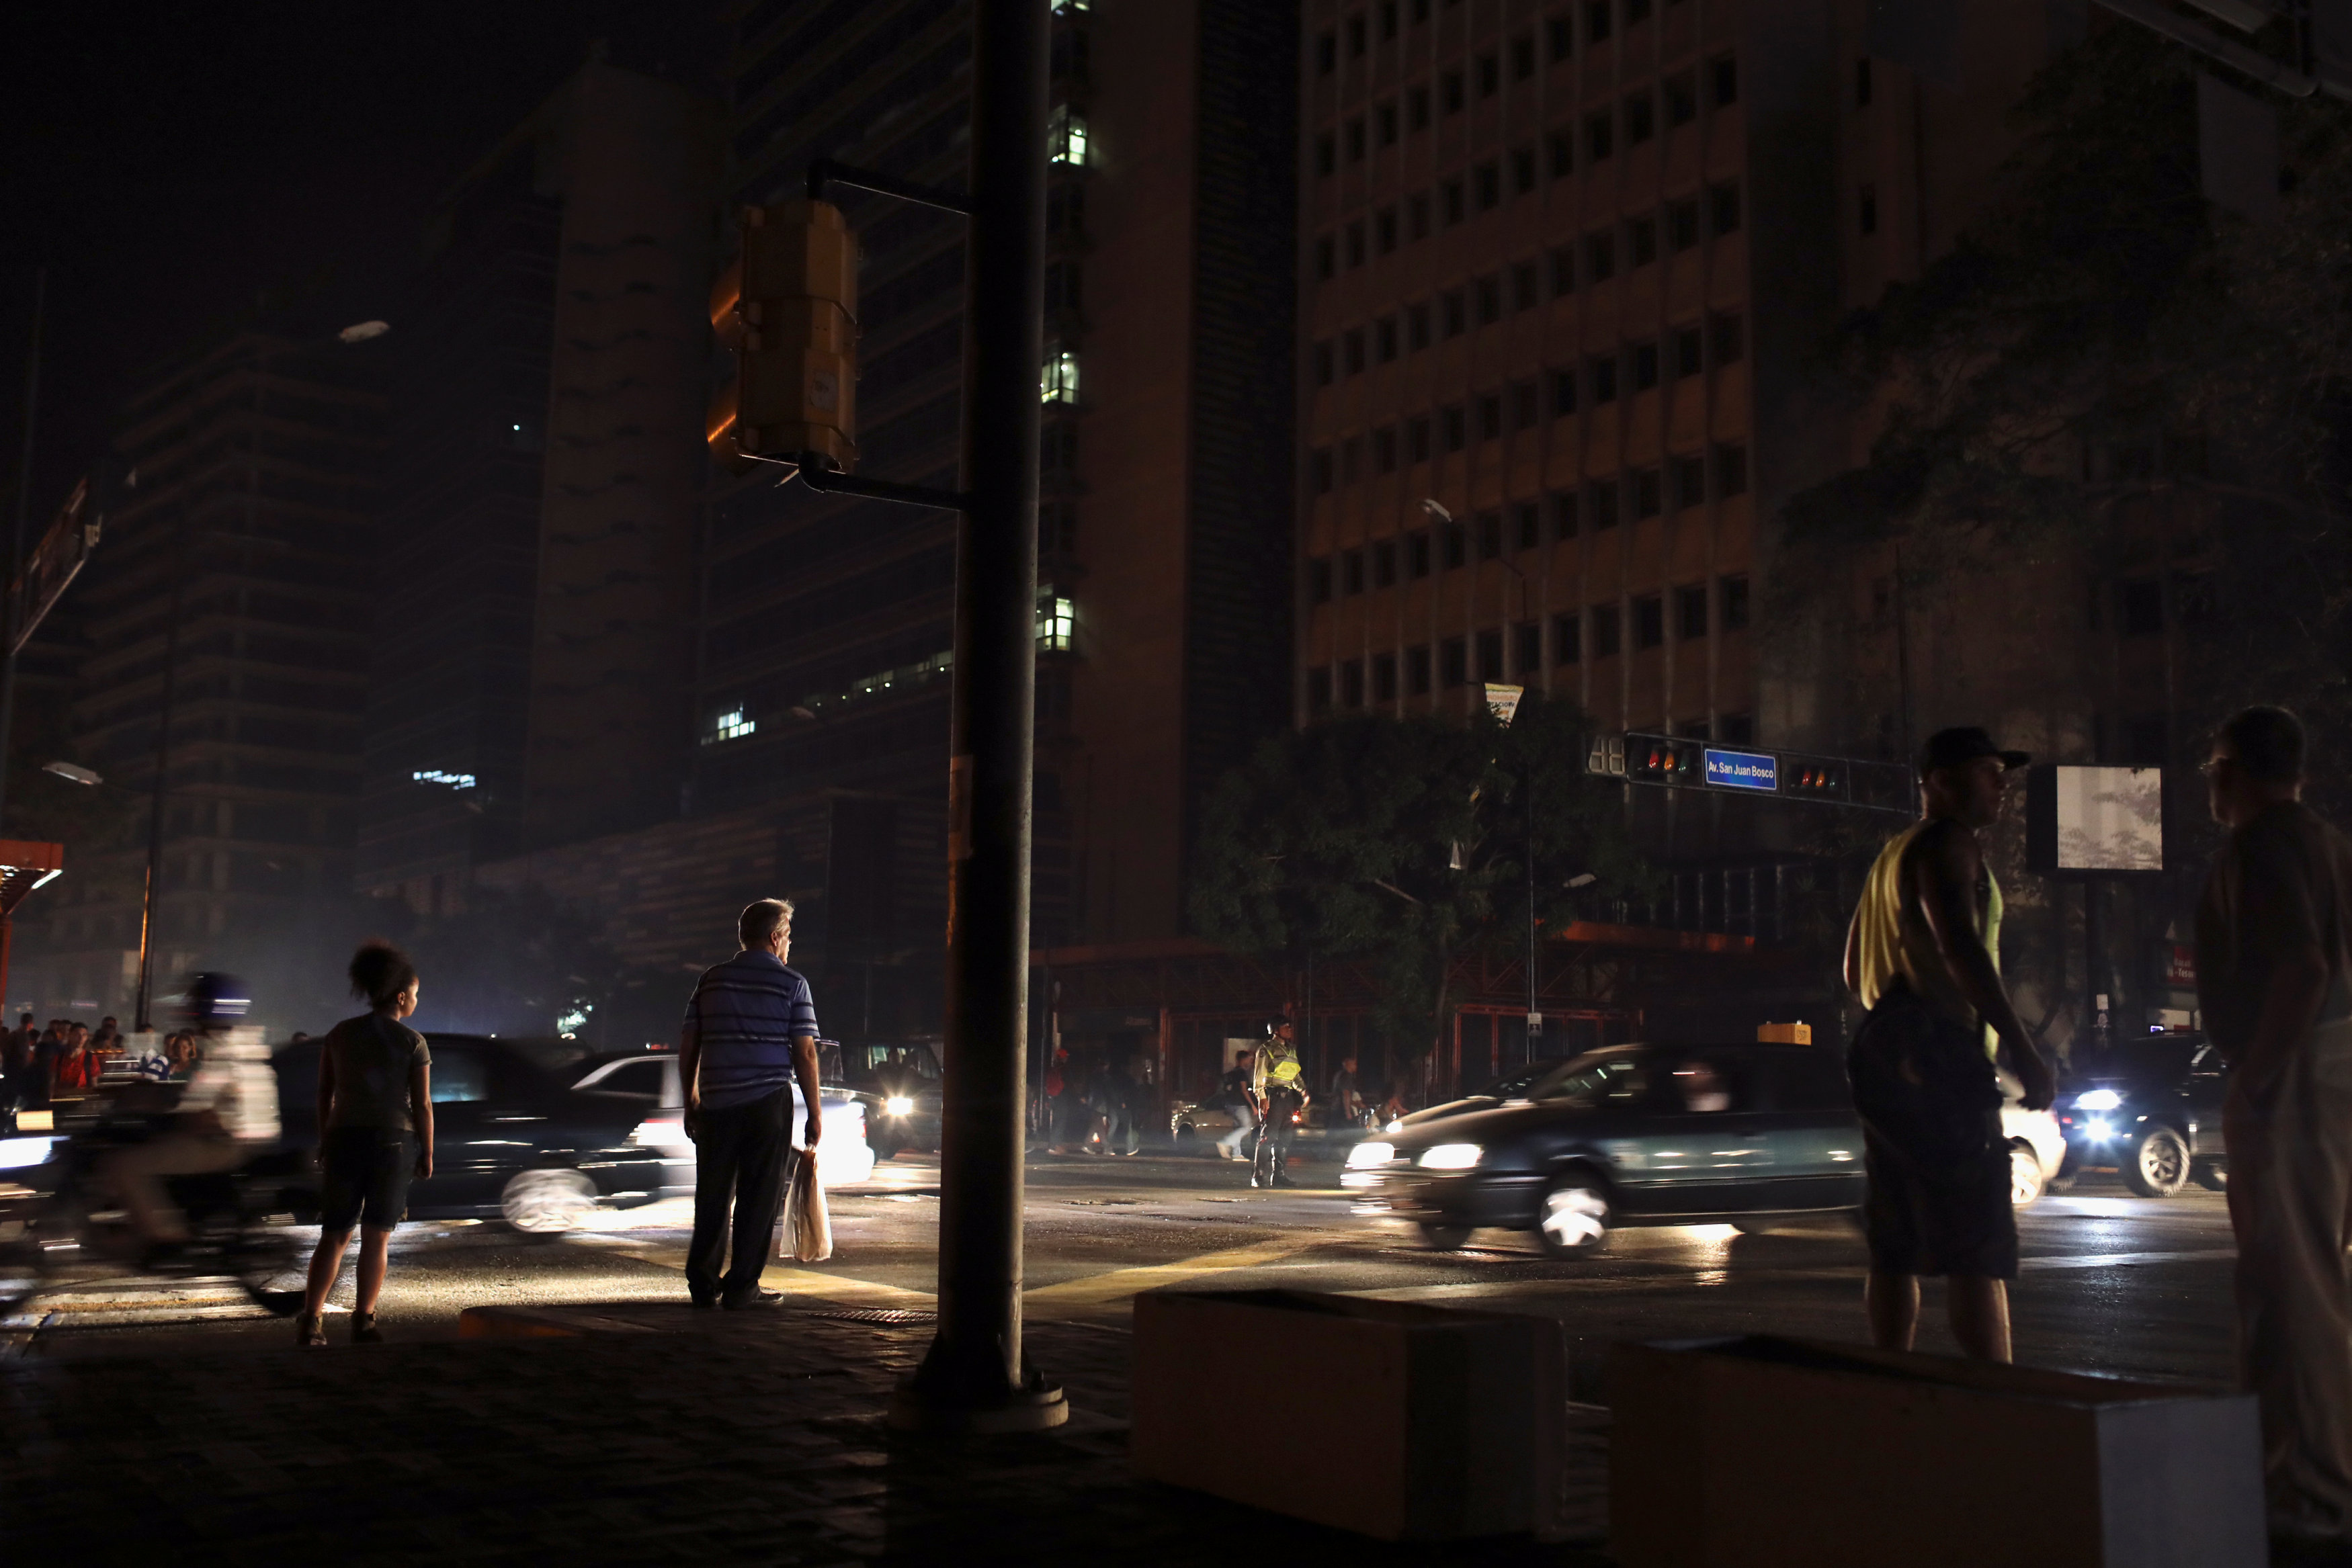 Municipio Chacao de nuevo 100% sin luz, dijo Gustavo Duque (Video)